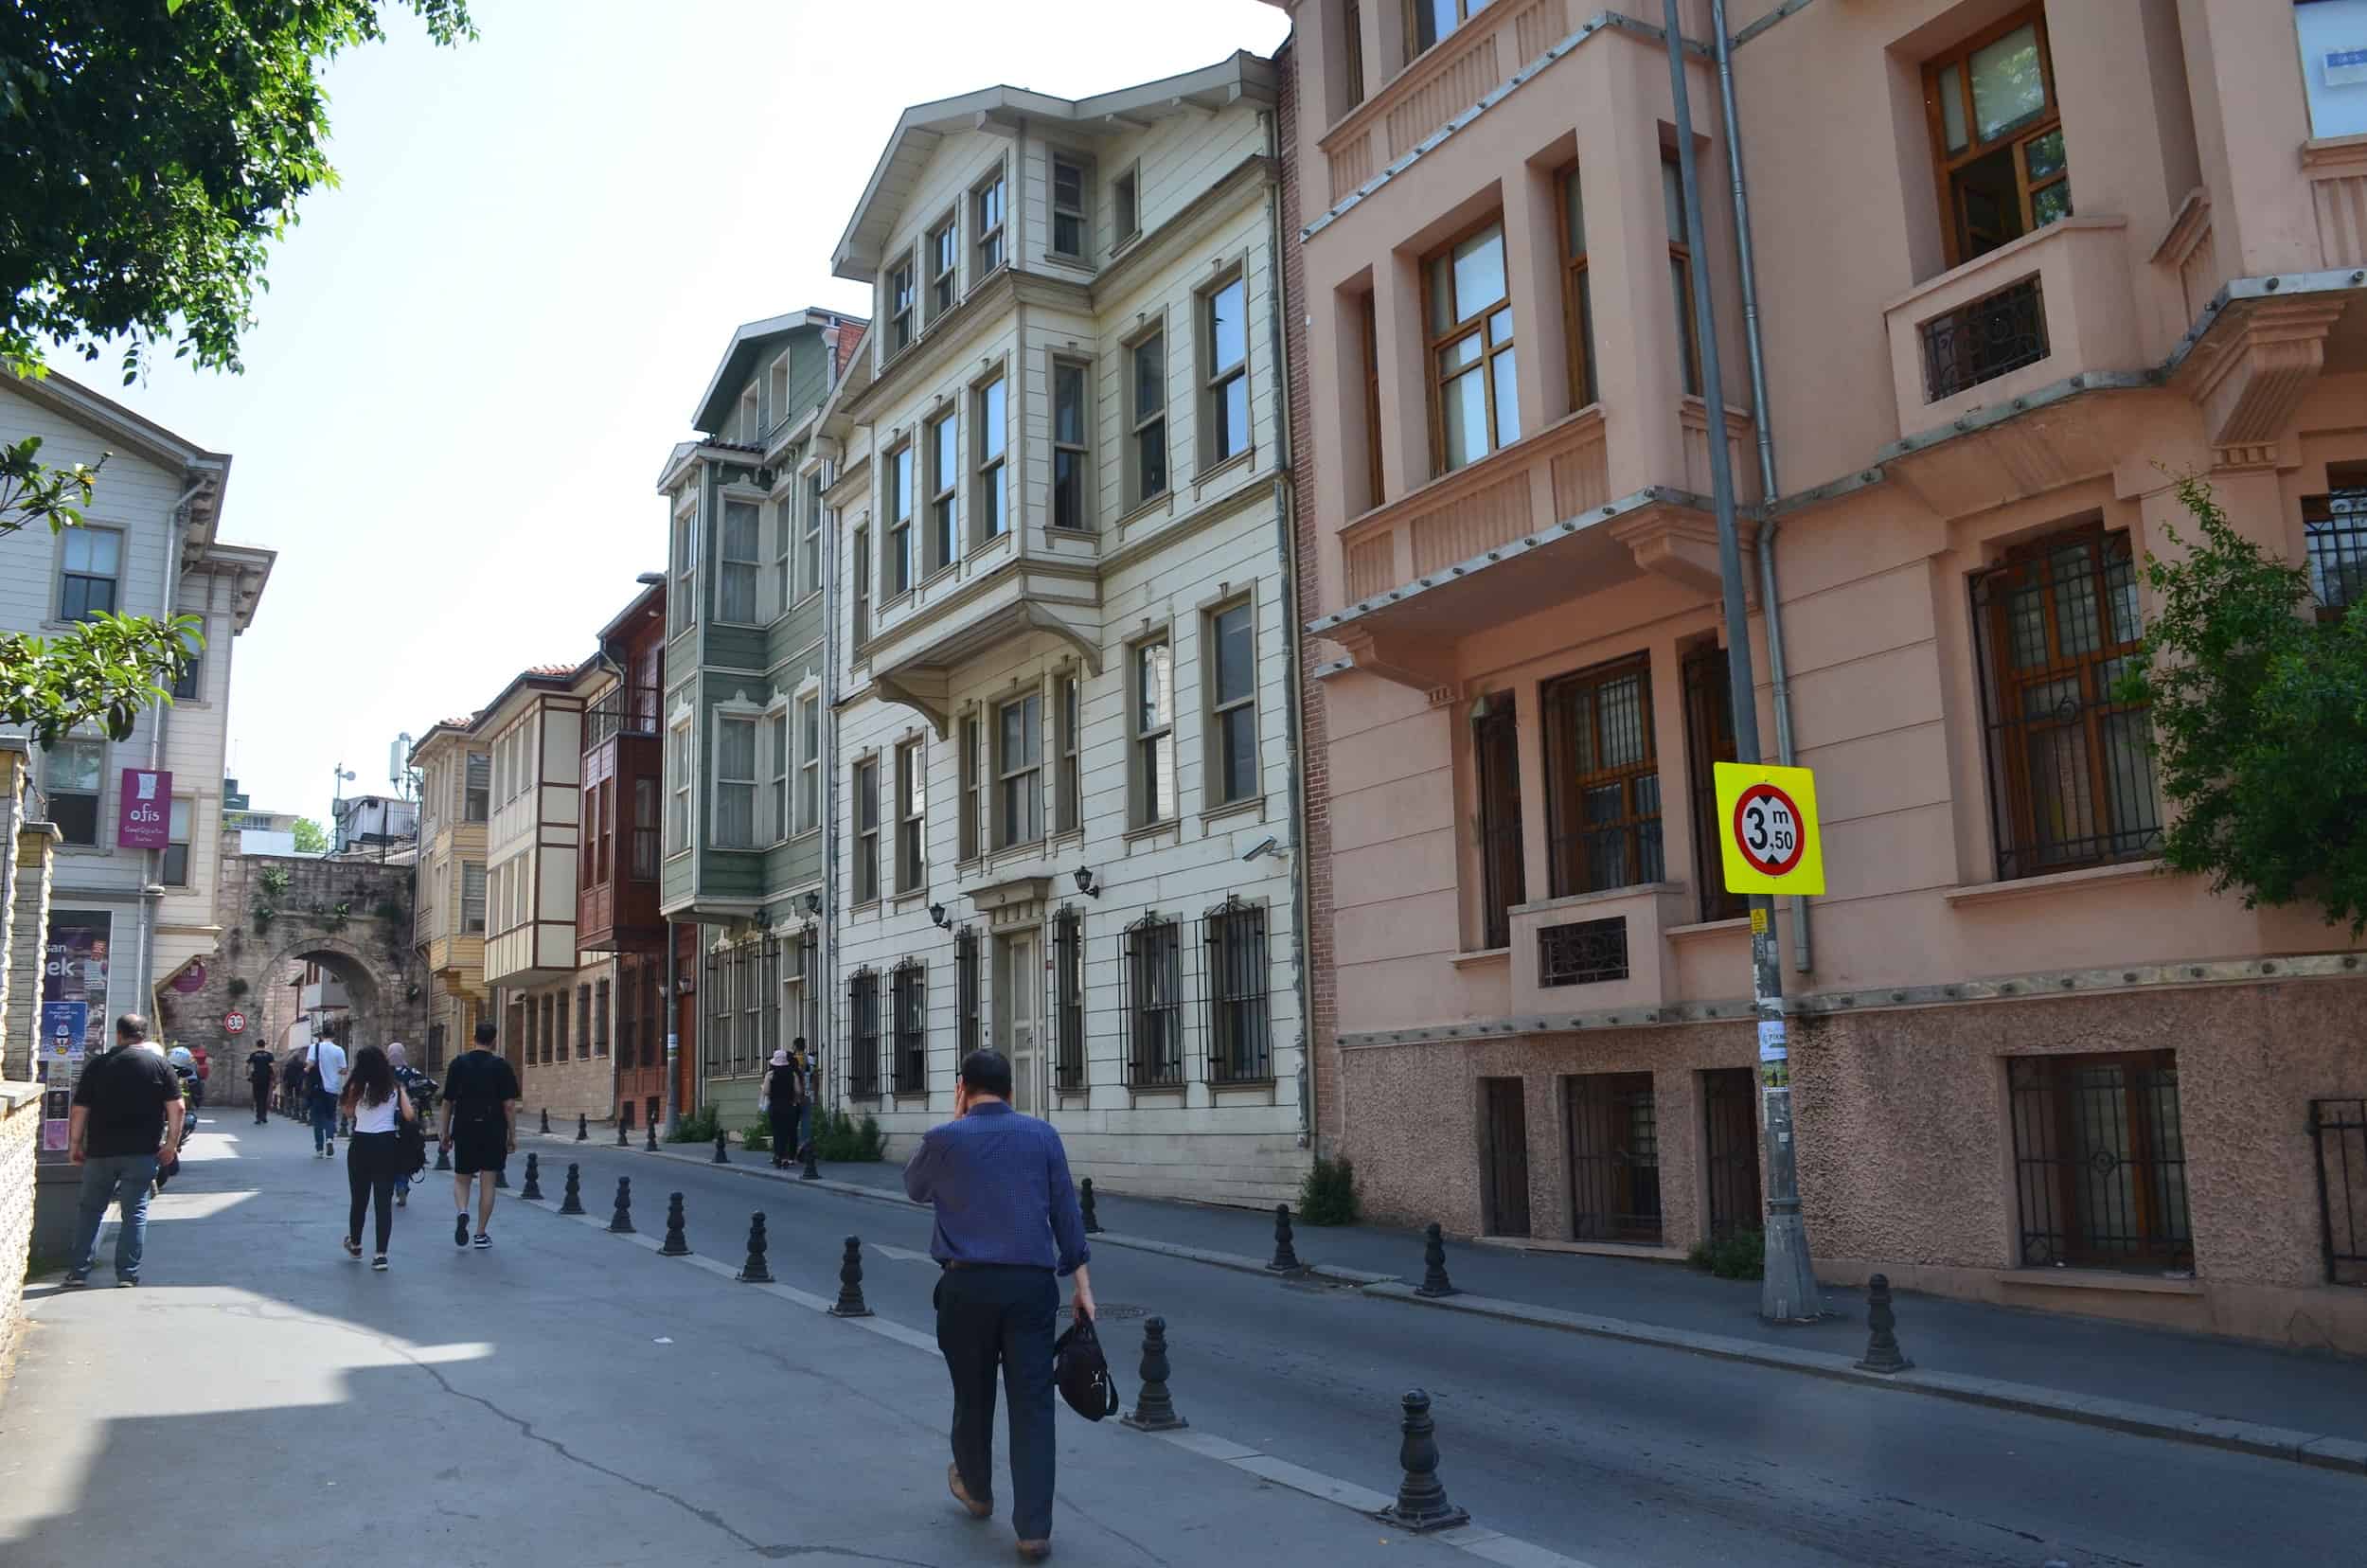 Restored Ottoman buildings along Süleymaniye Street in Şehzadebaşı, Istanbul, Turkey